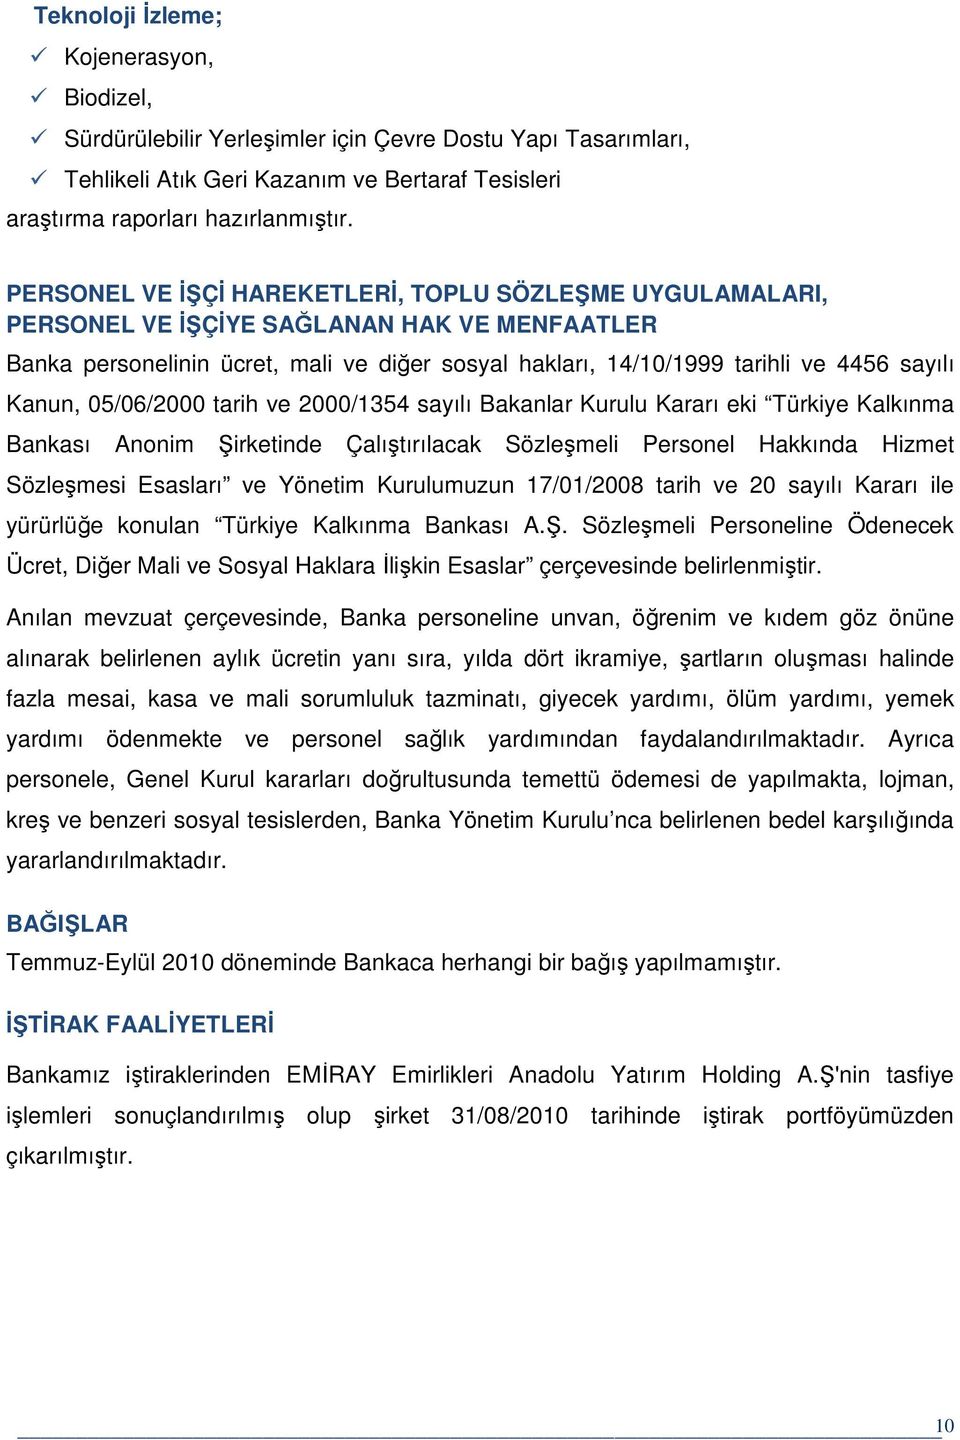 Kanun, 05/06/2000 tarih ve 2000/1354 sayılı Bakanlar Kurulu Kararı eki Türkiye Kalkınma Bankası Anonim Şirketinde Çalıştırılacak Sözleşmeli Personel Hakkında Hizmet Sözleşmesi Esasları ve Yönetim